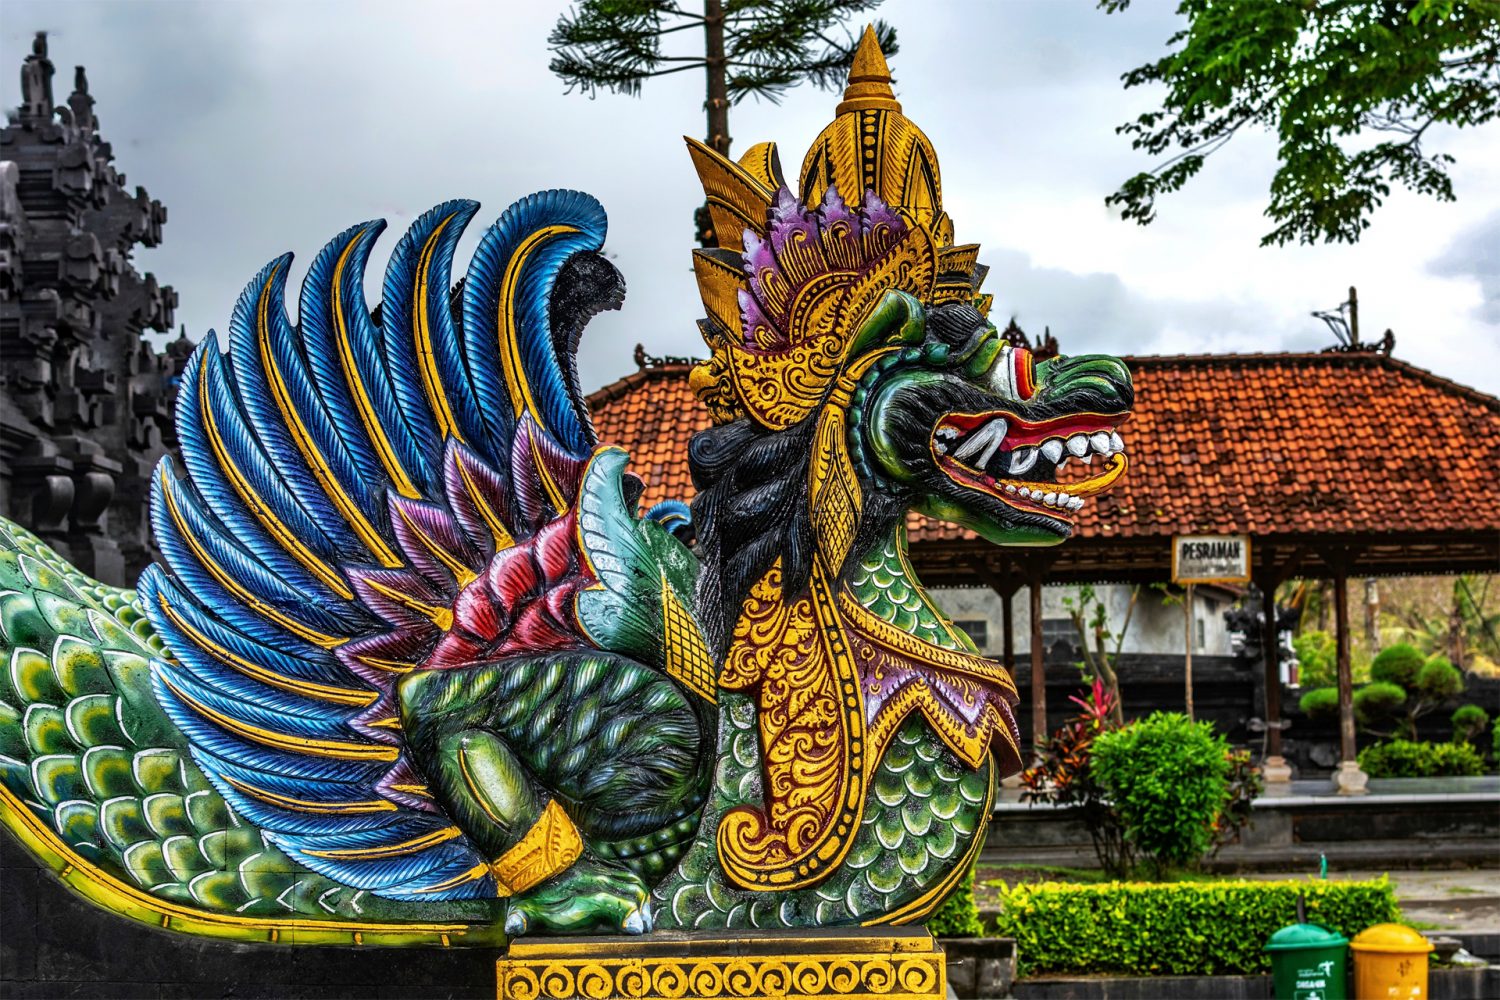 Tanah Lot at Bali